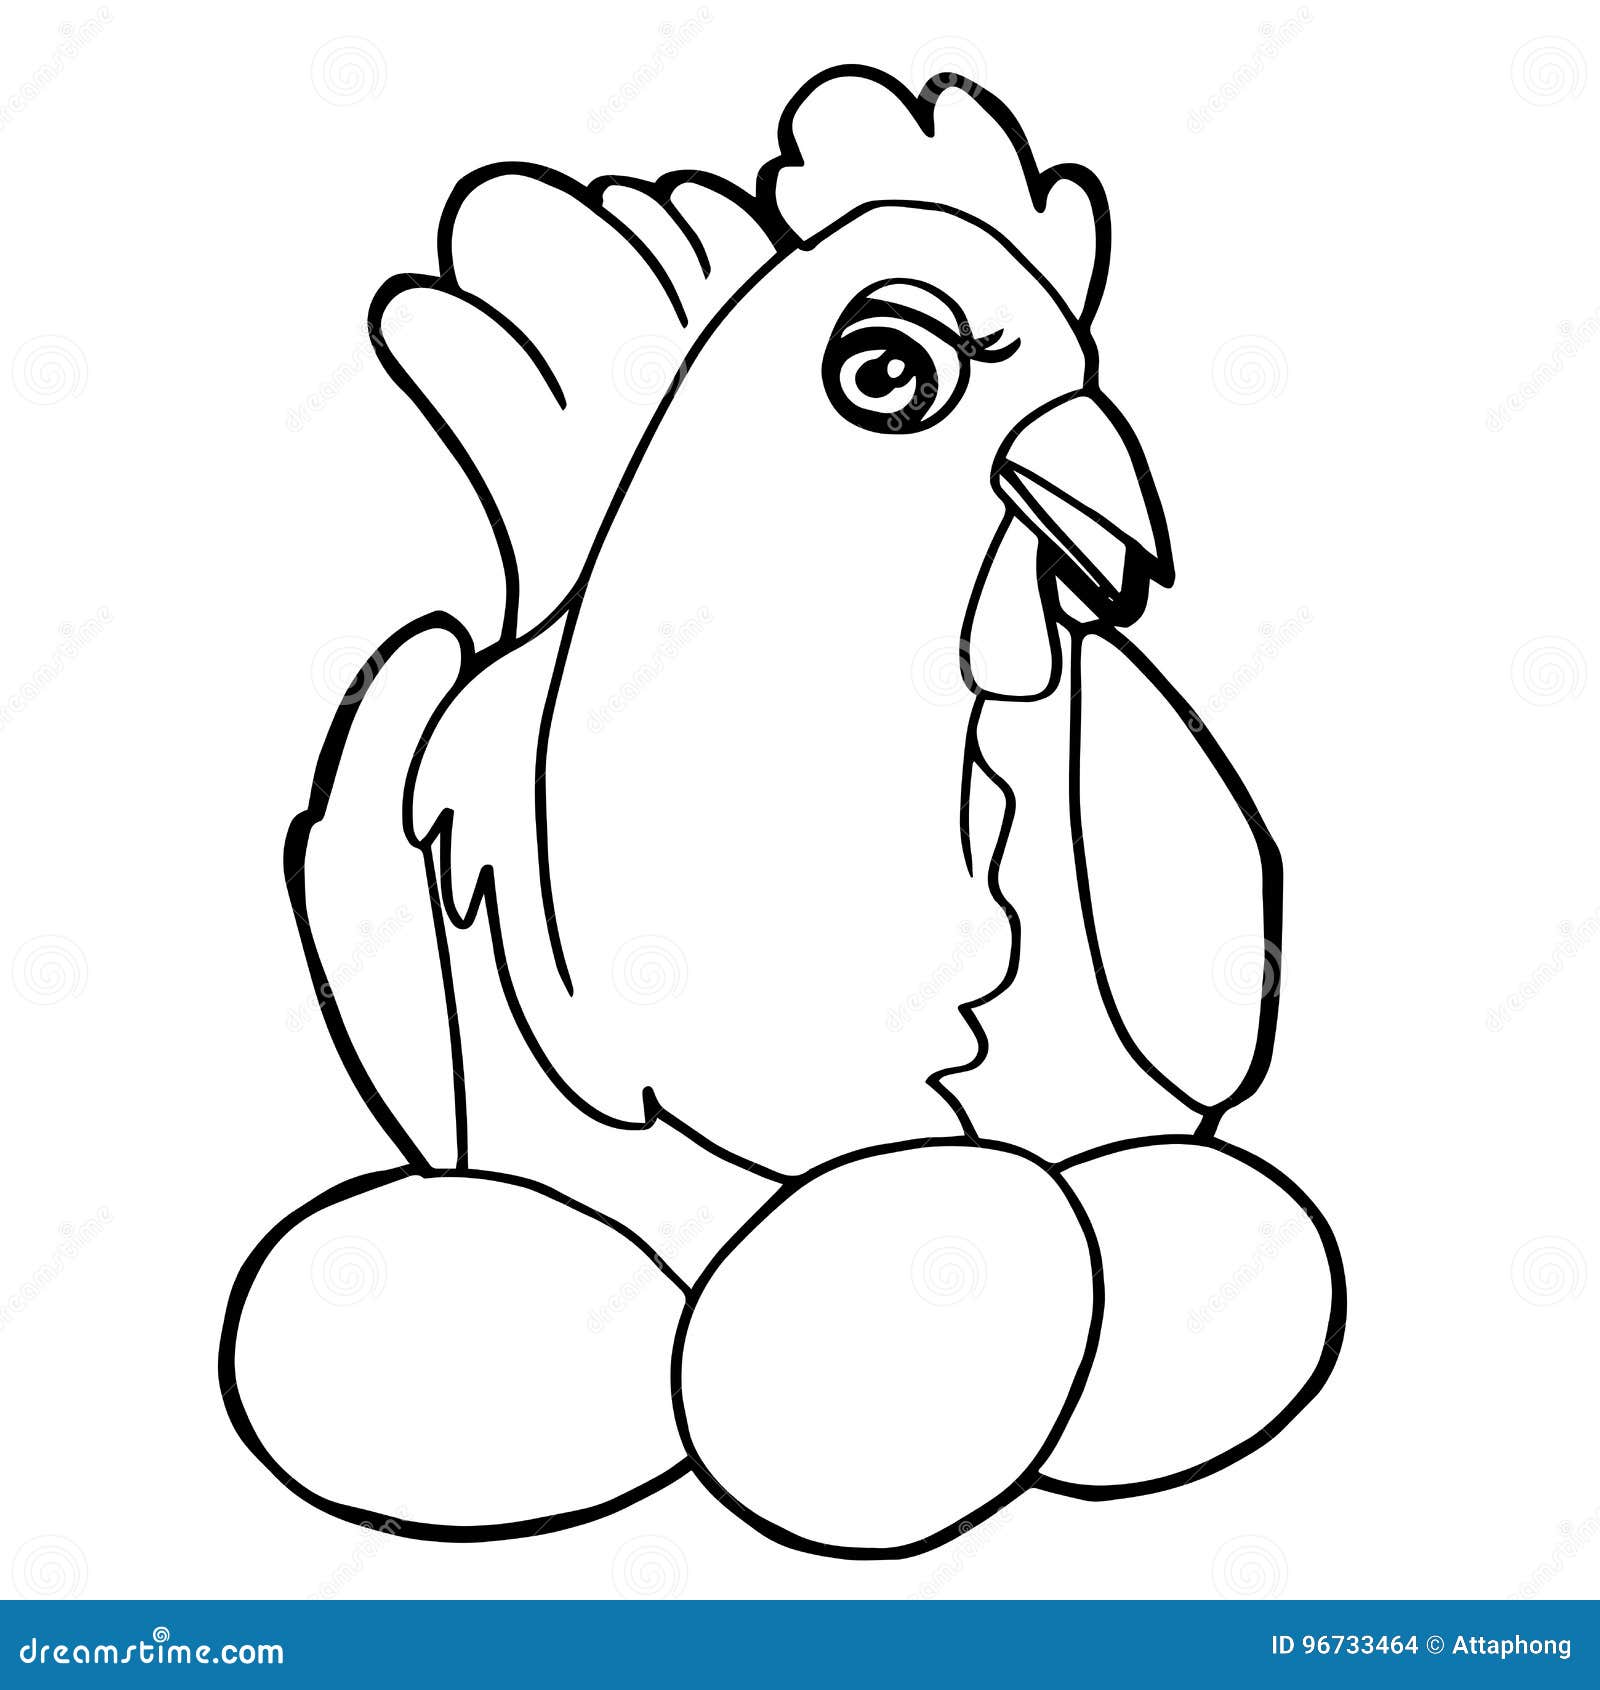 Cartoon cute chicken coloring page vector stock vector